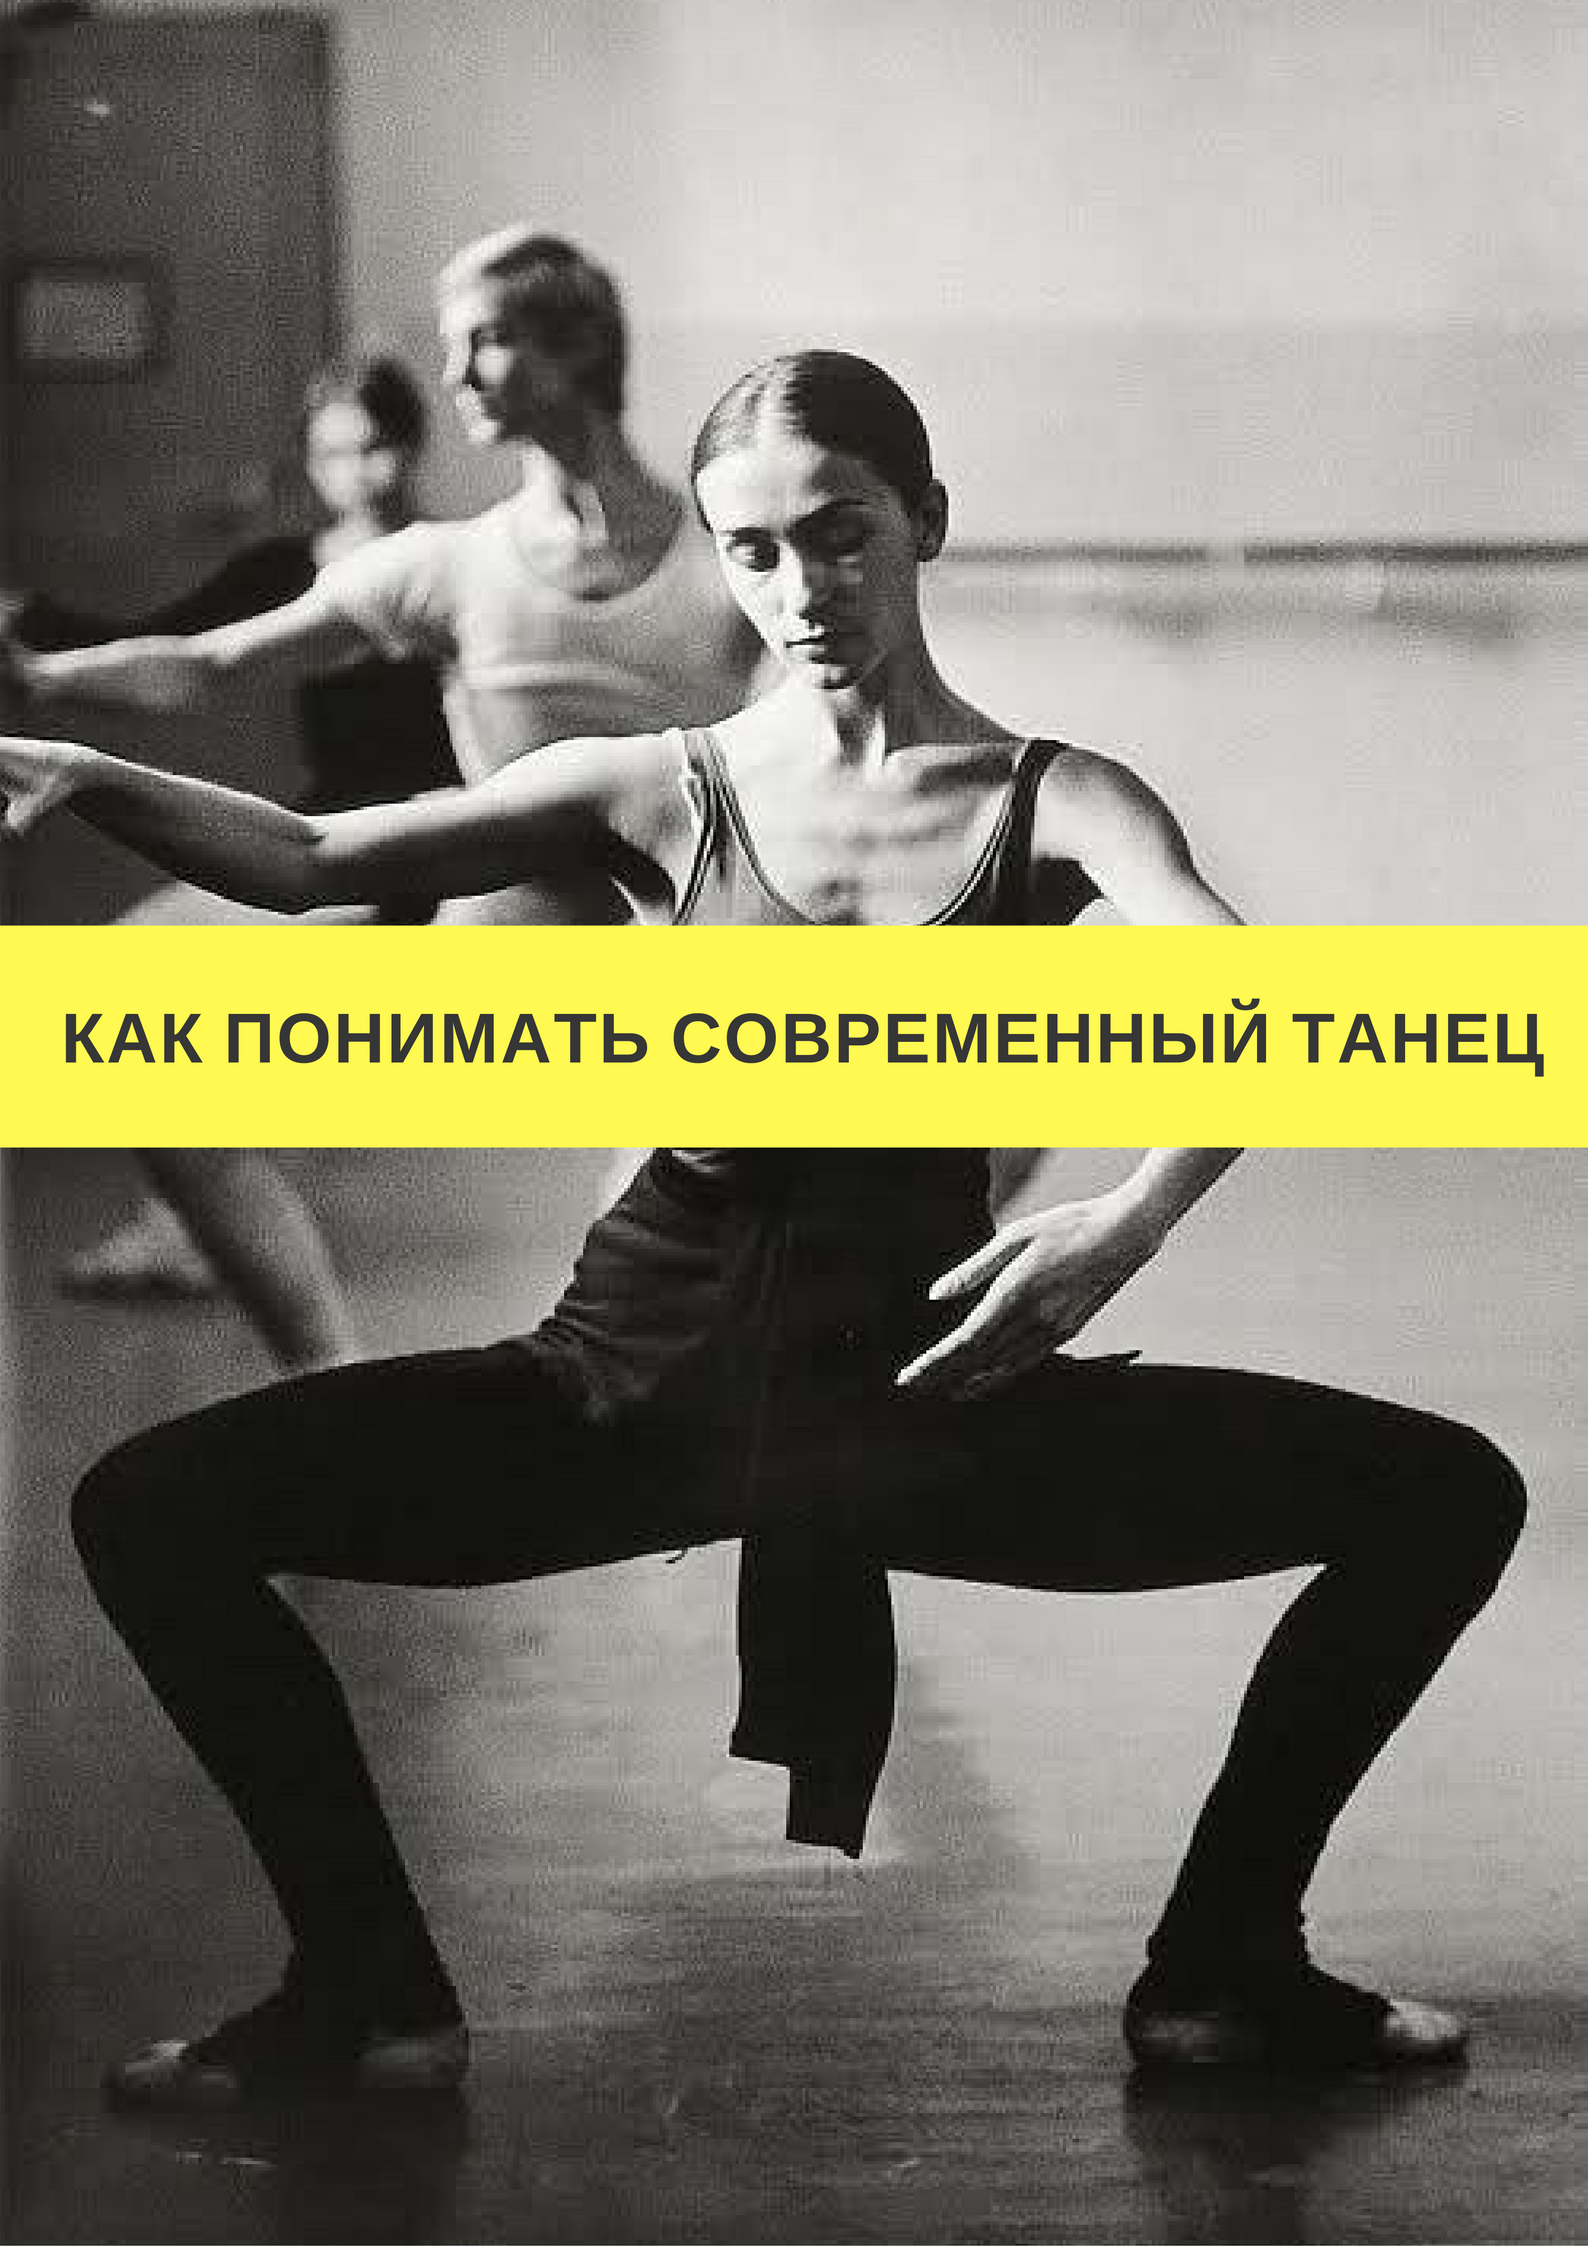 Как мы понимаем современность. Цикличность в танце. Цикл "танец" м. Барышникова. Понедельник танцы.